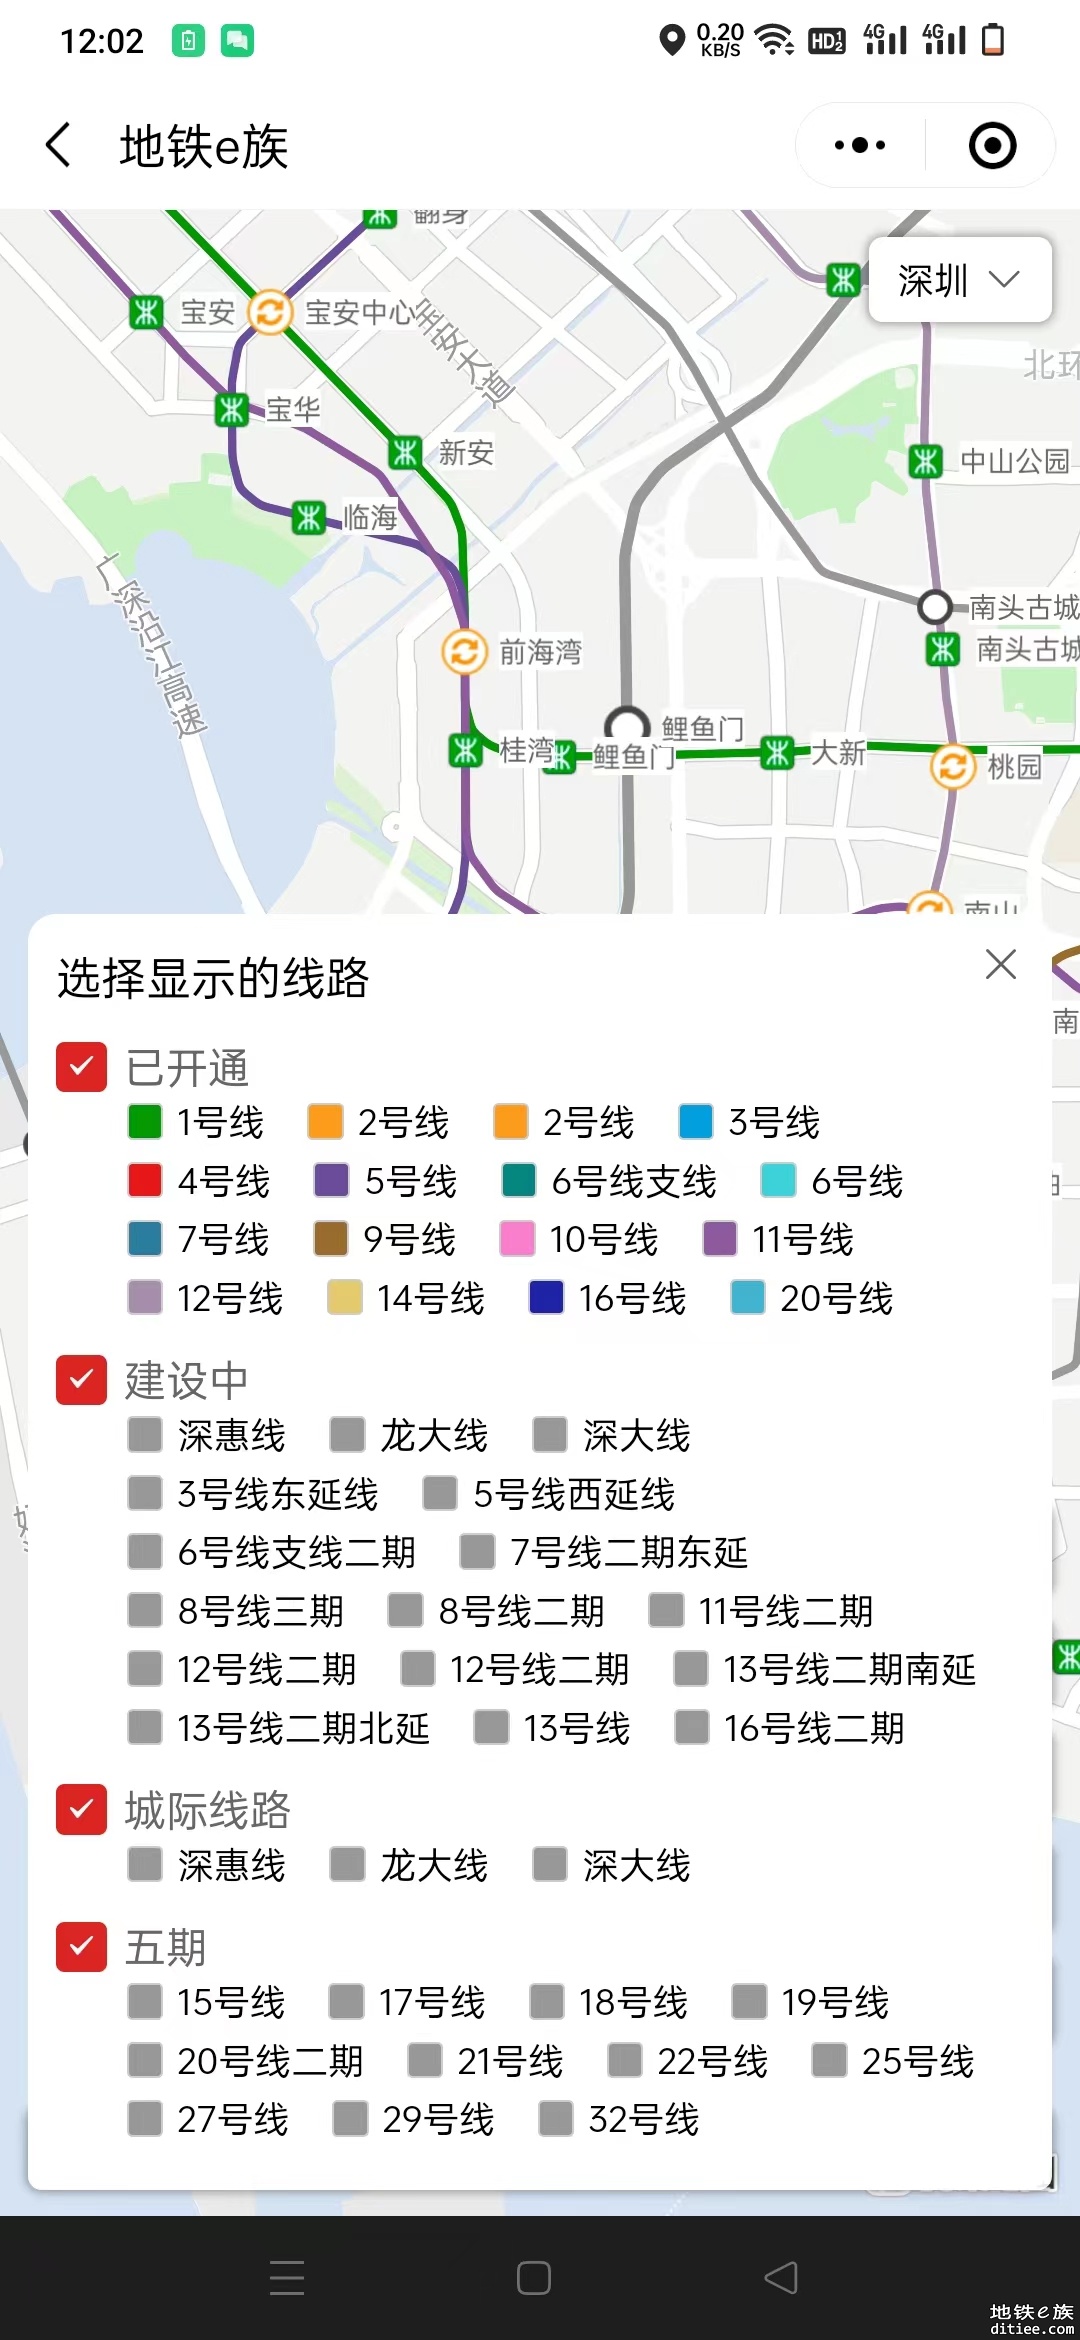 欢迎体验深圳地铁线路图地图版